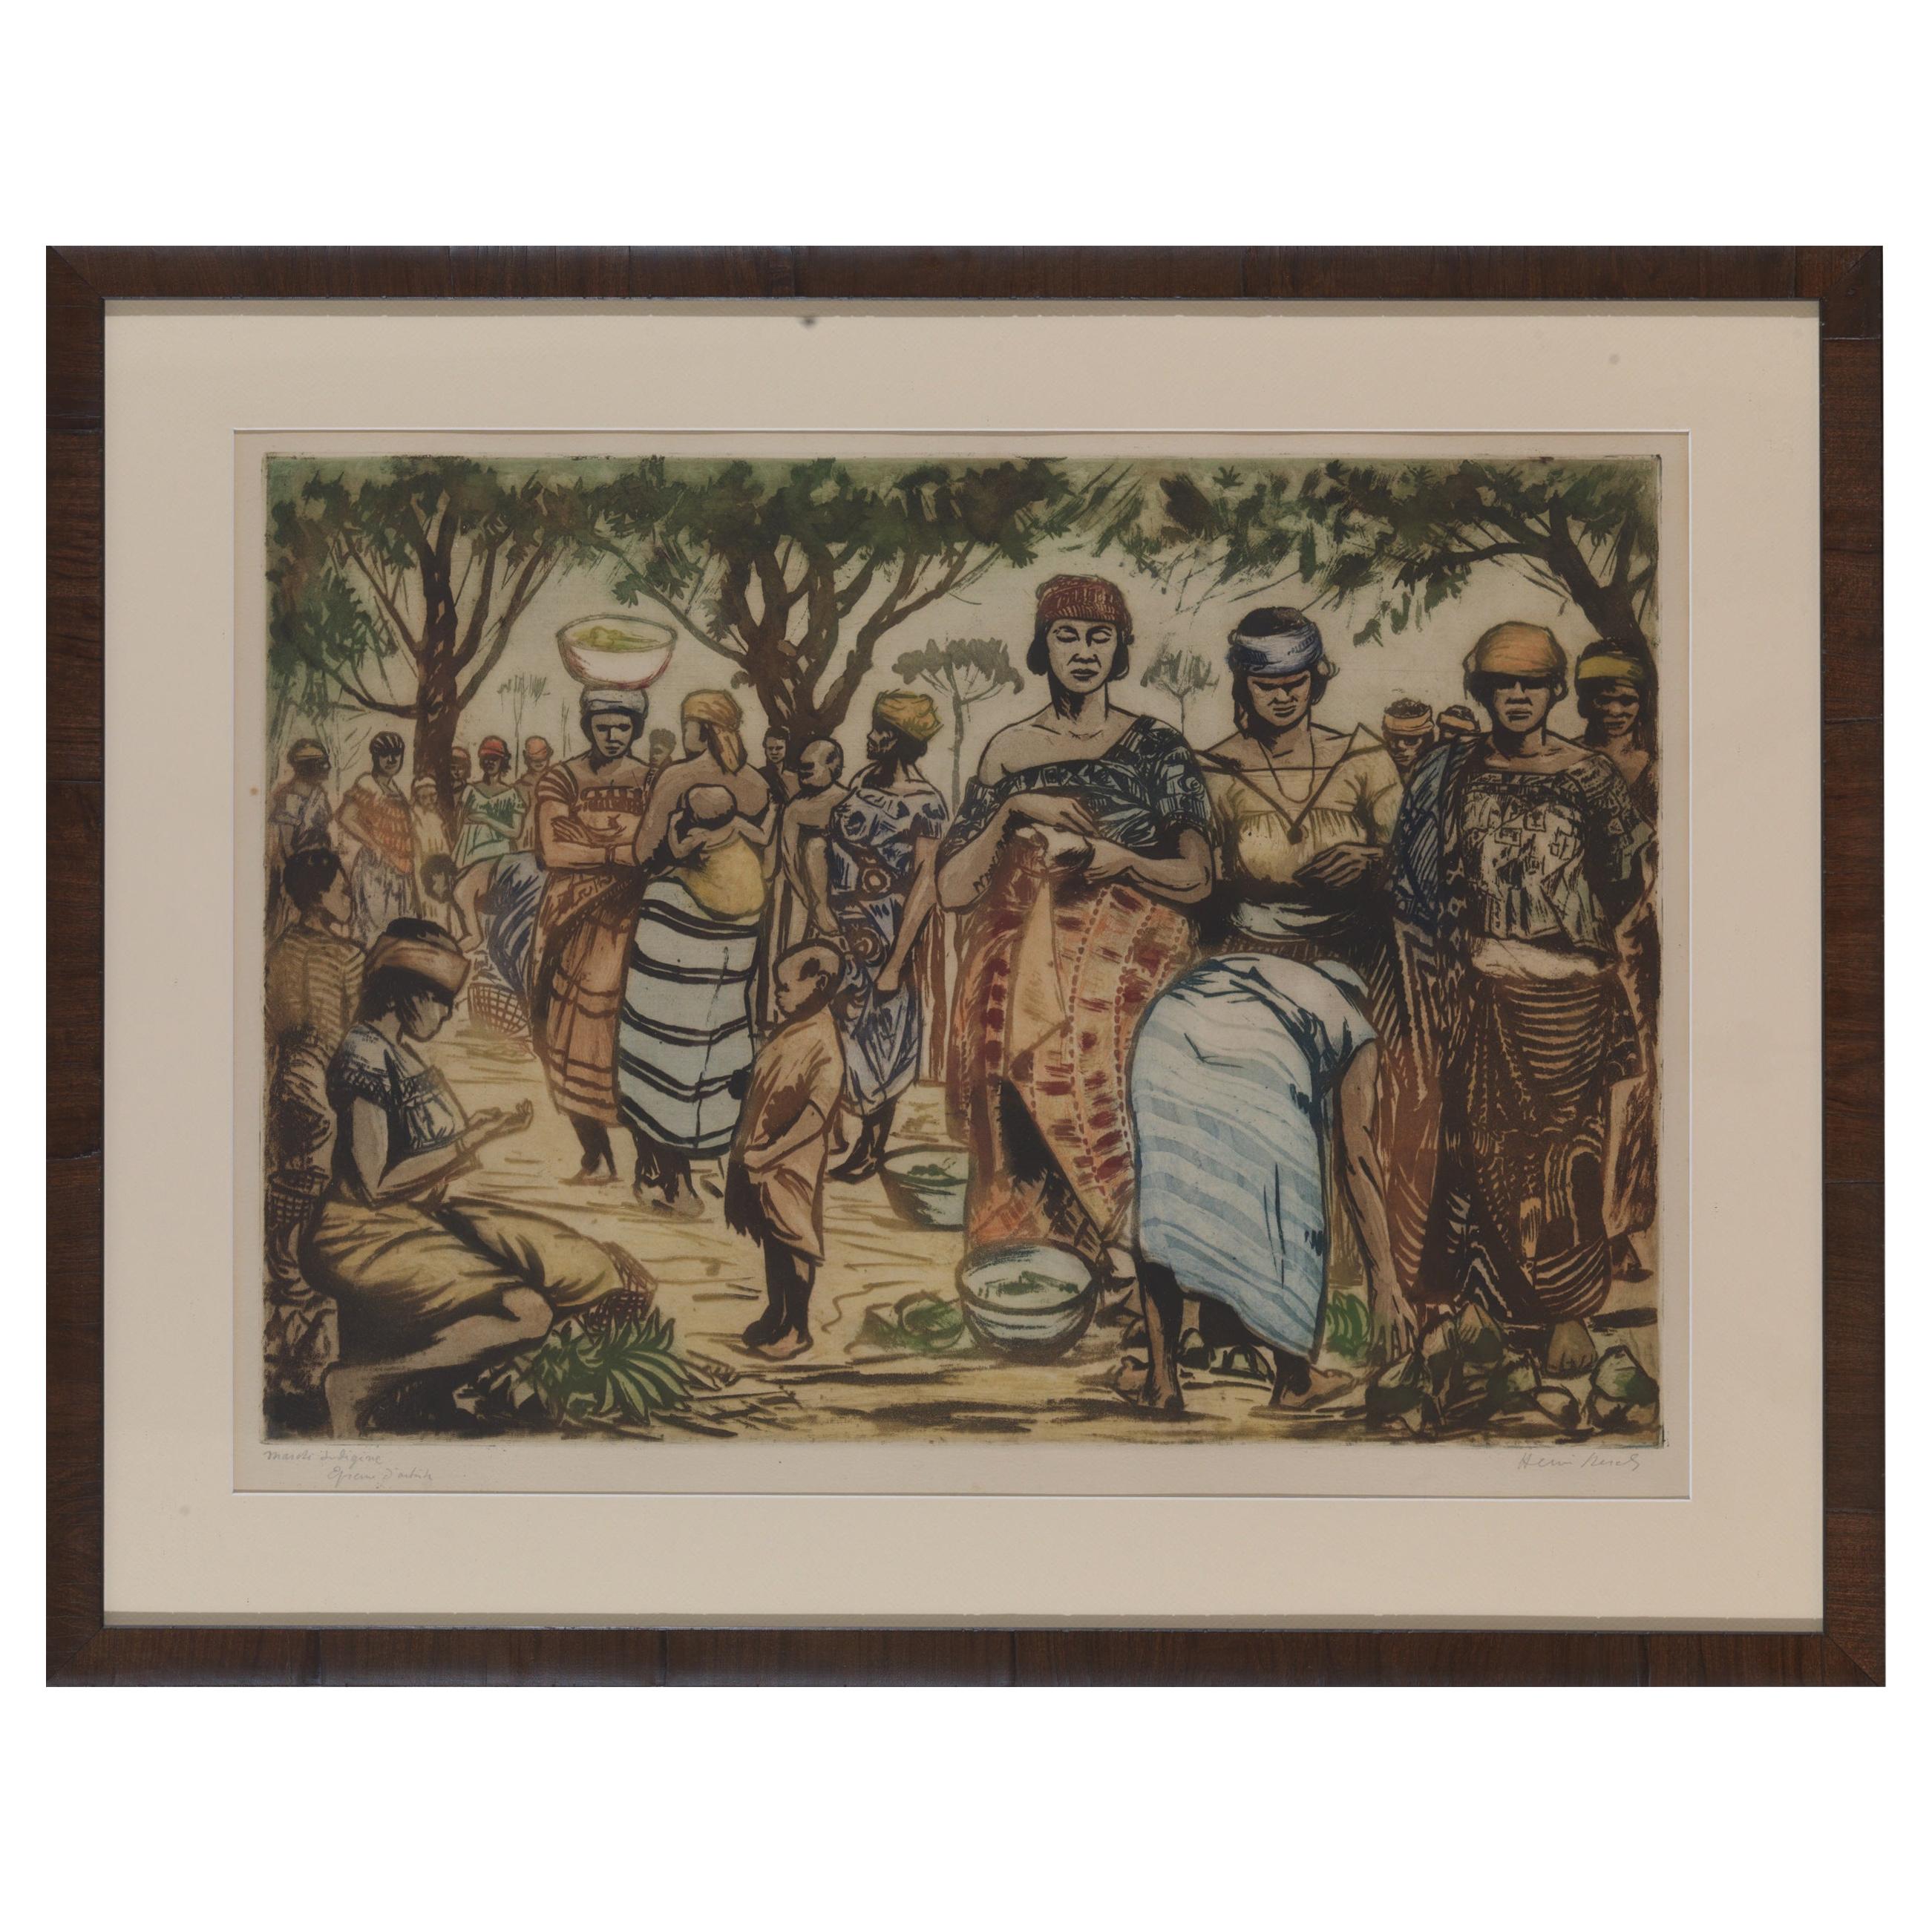 Kerels Henry, Kongo, Indigene Kunst, geätzt und farbig gefärbt im Angebot